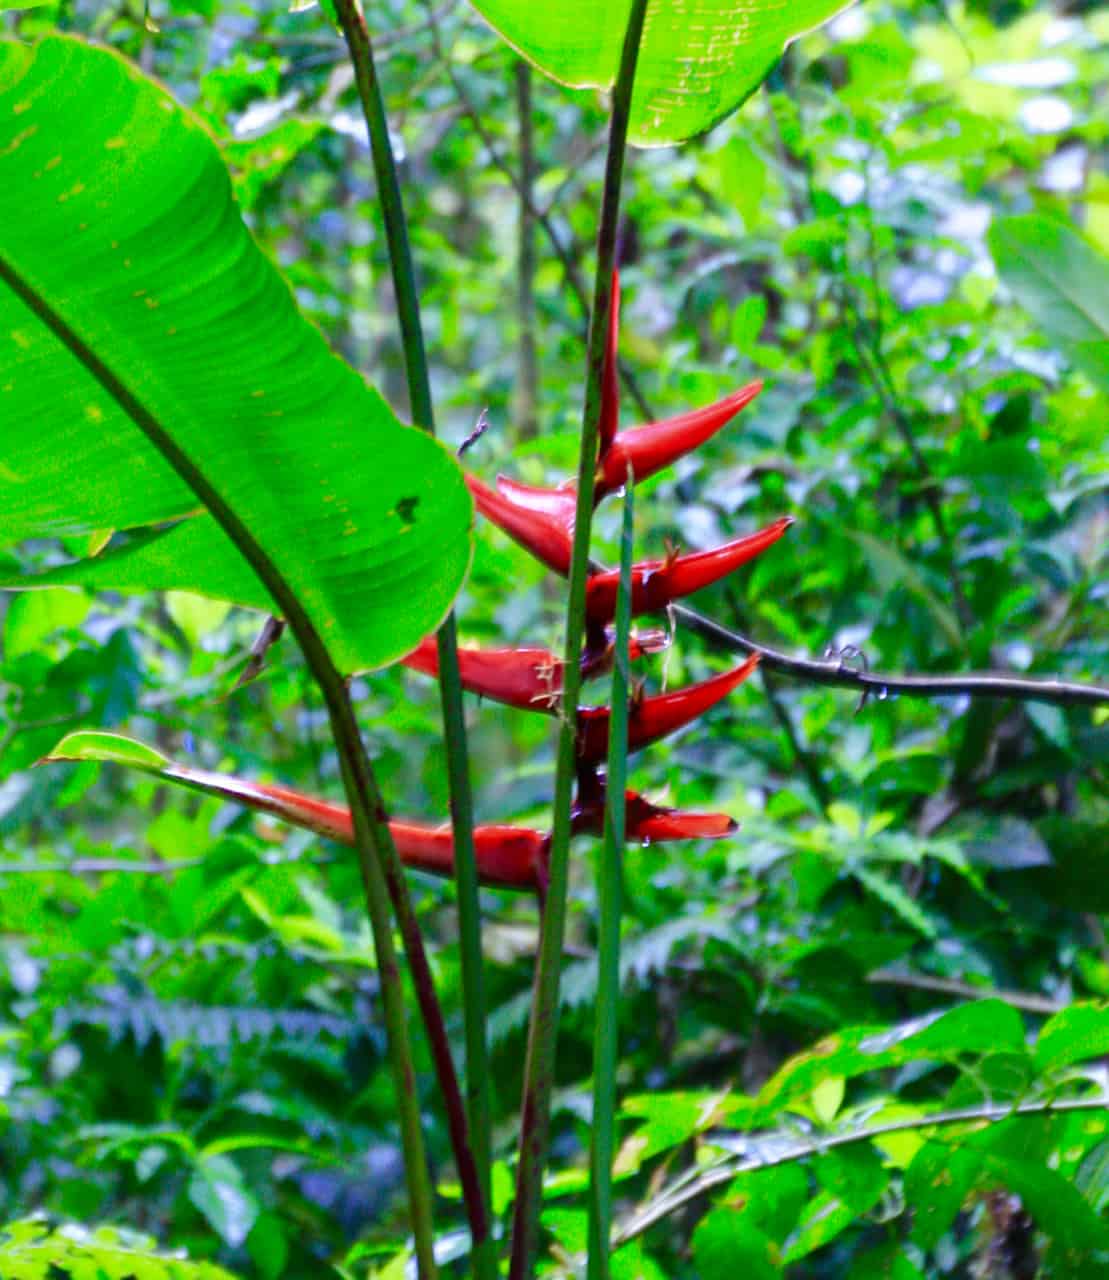  et glimt av farge fanger øyet I Monteverde Cloud Forest.